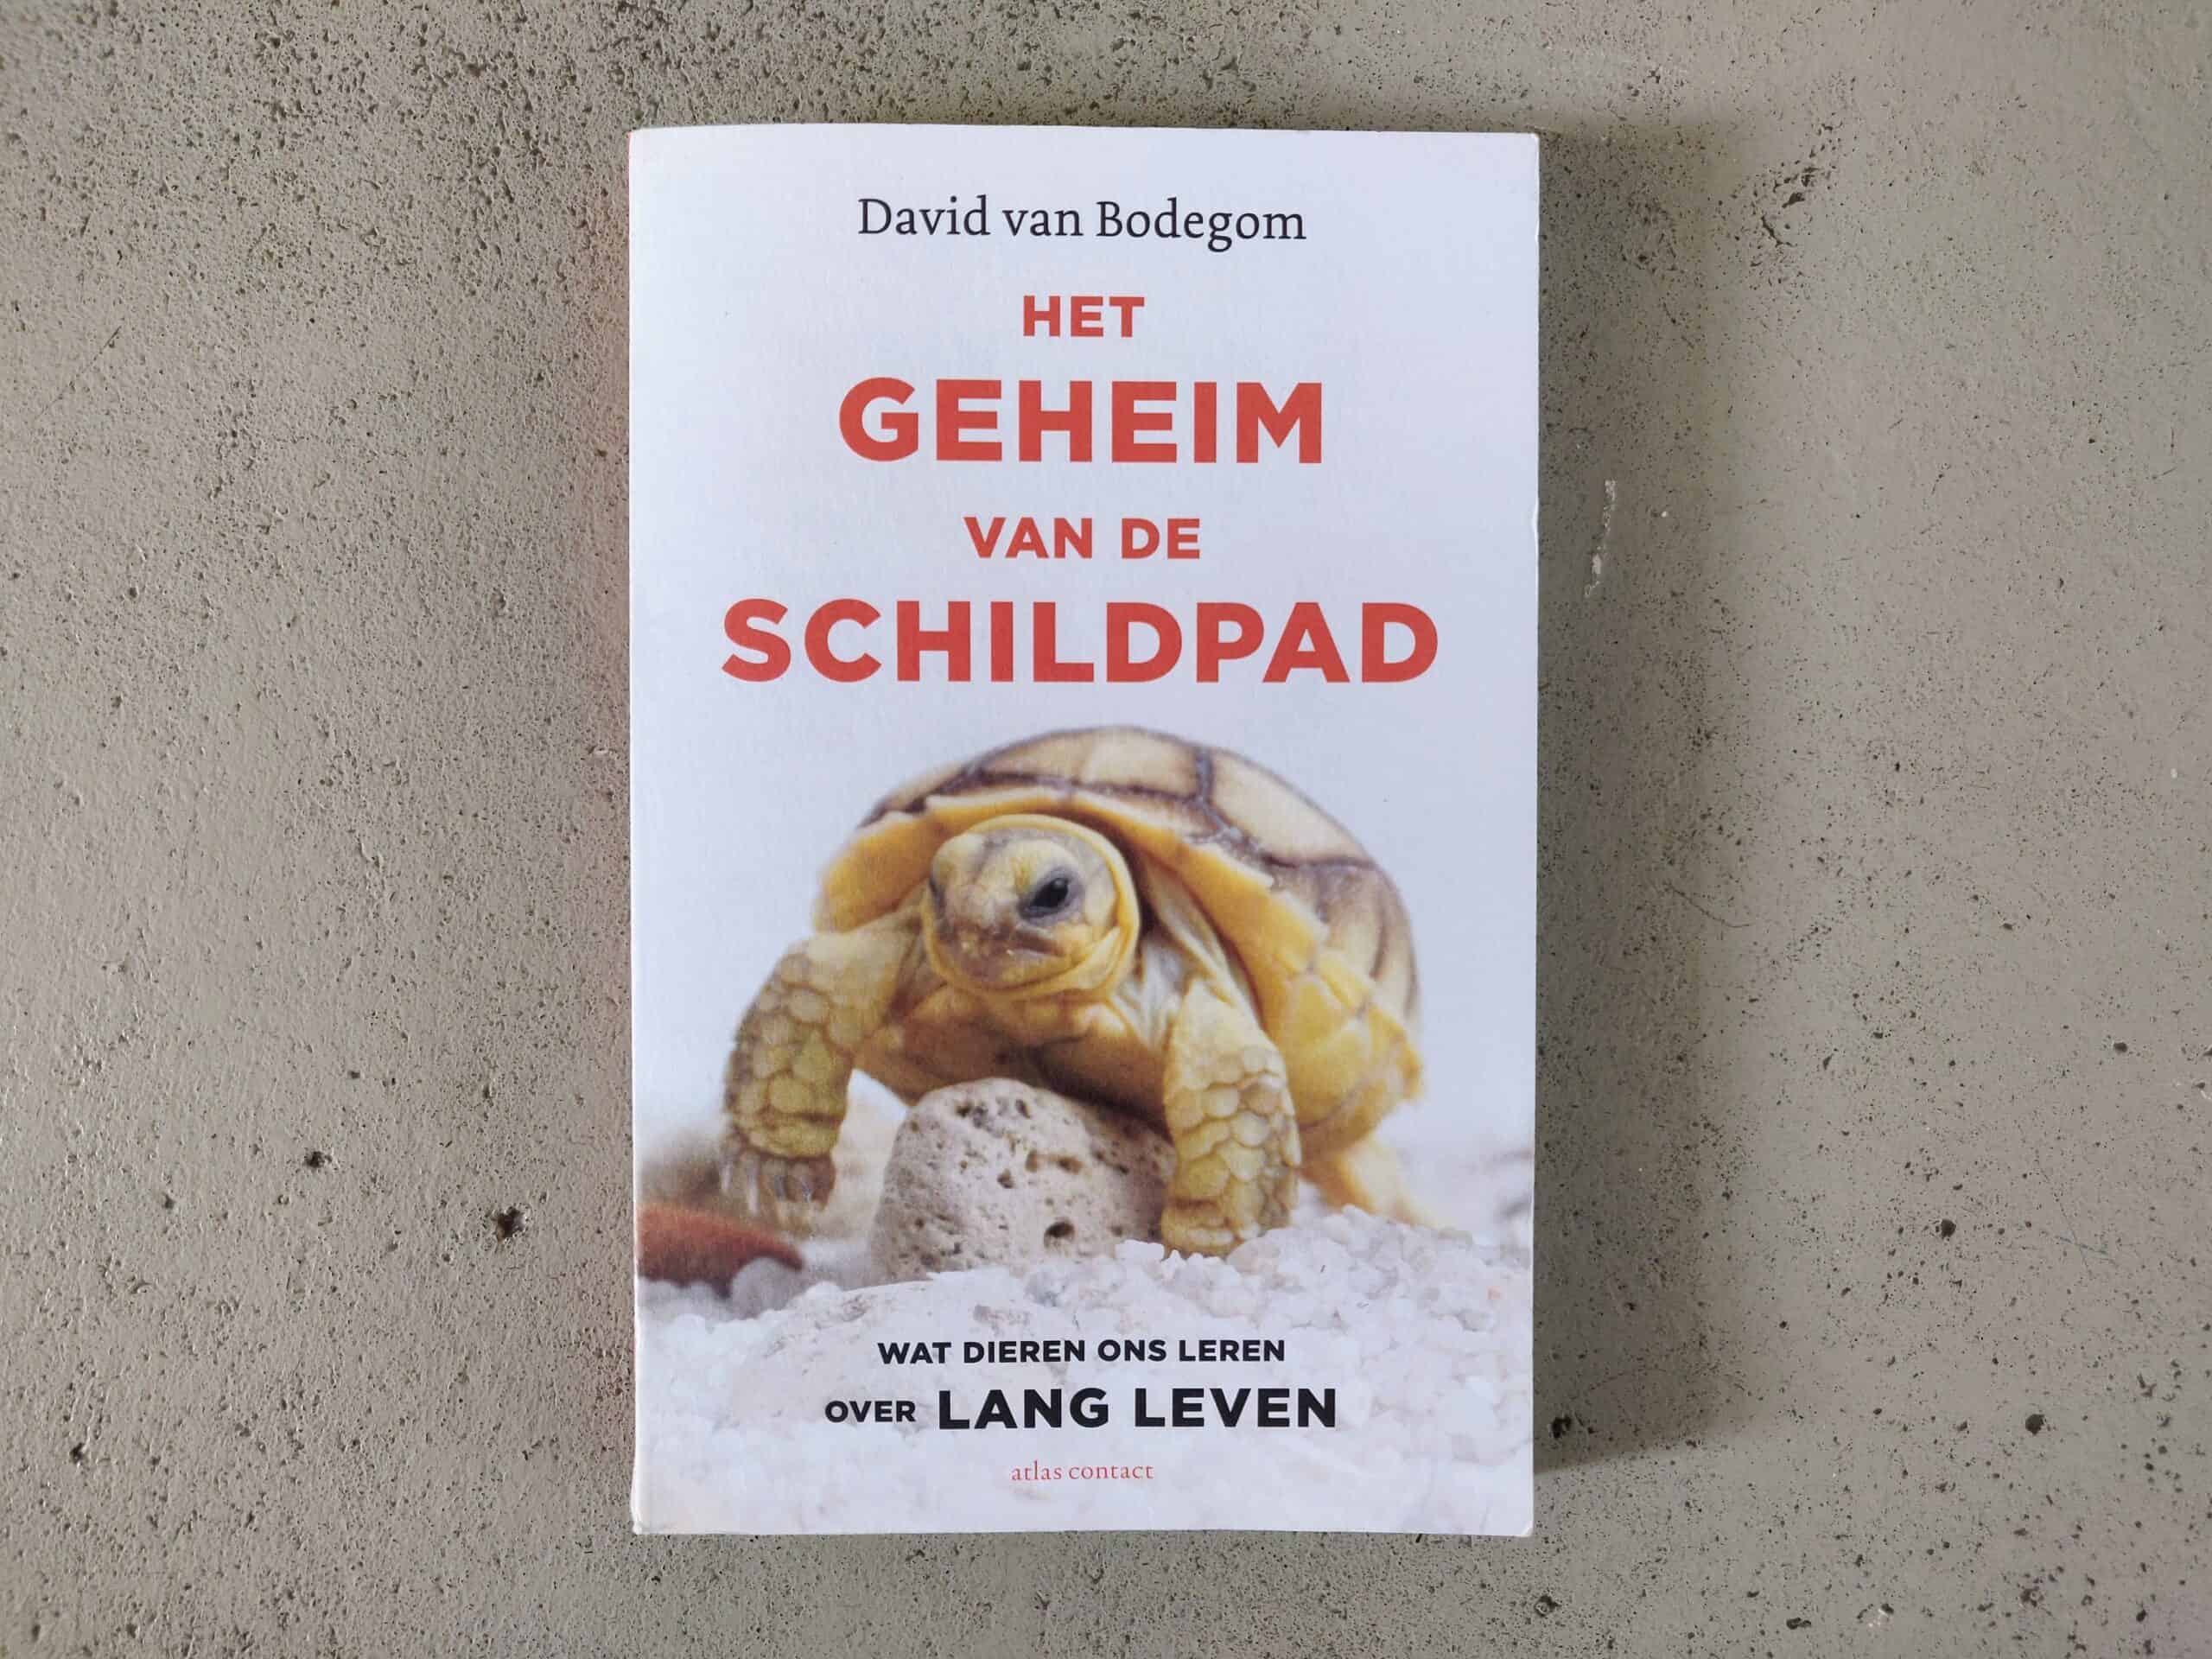 David van Bodegom - Het geheim van de schildpad